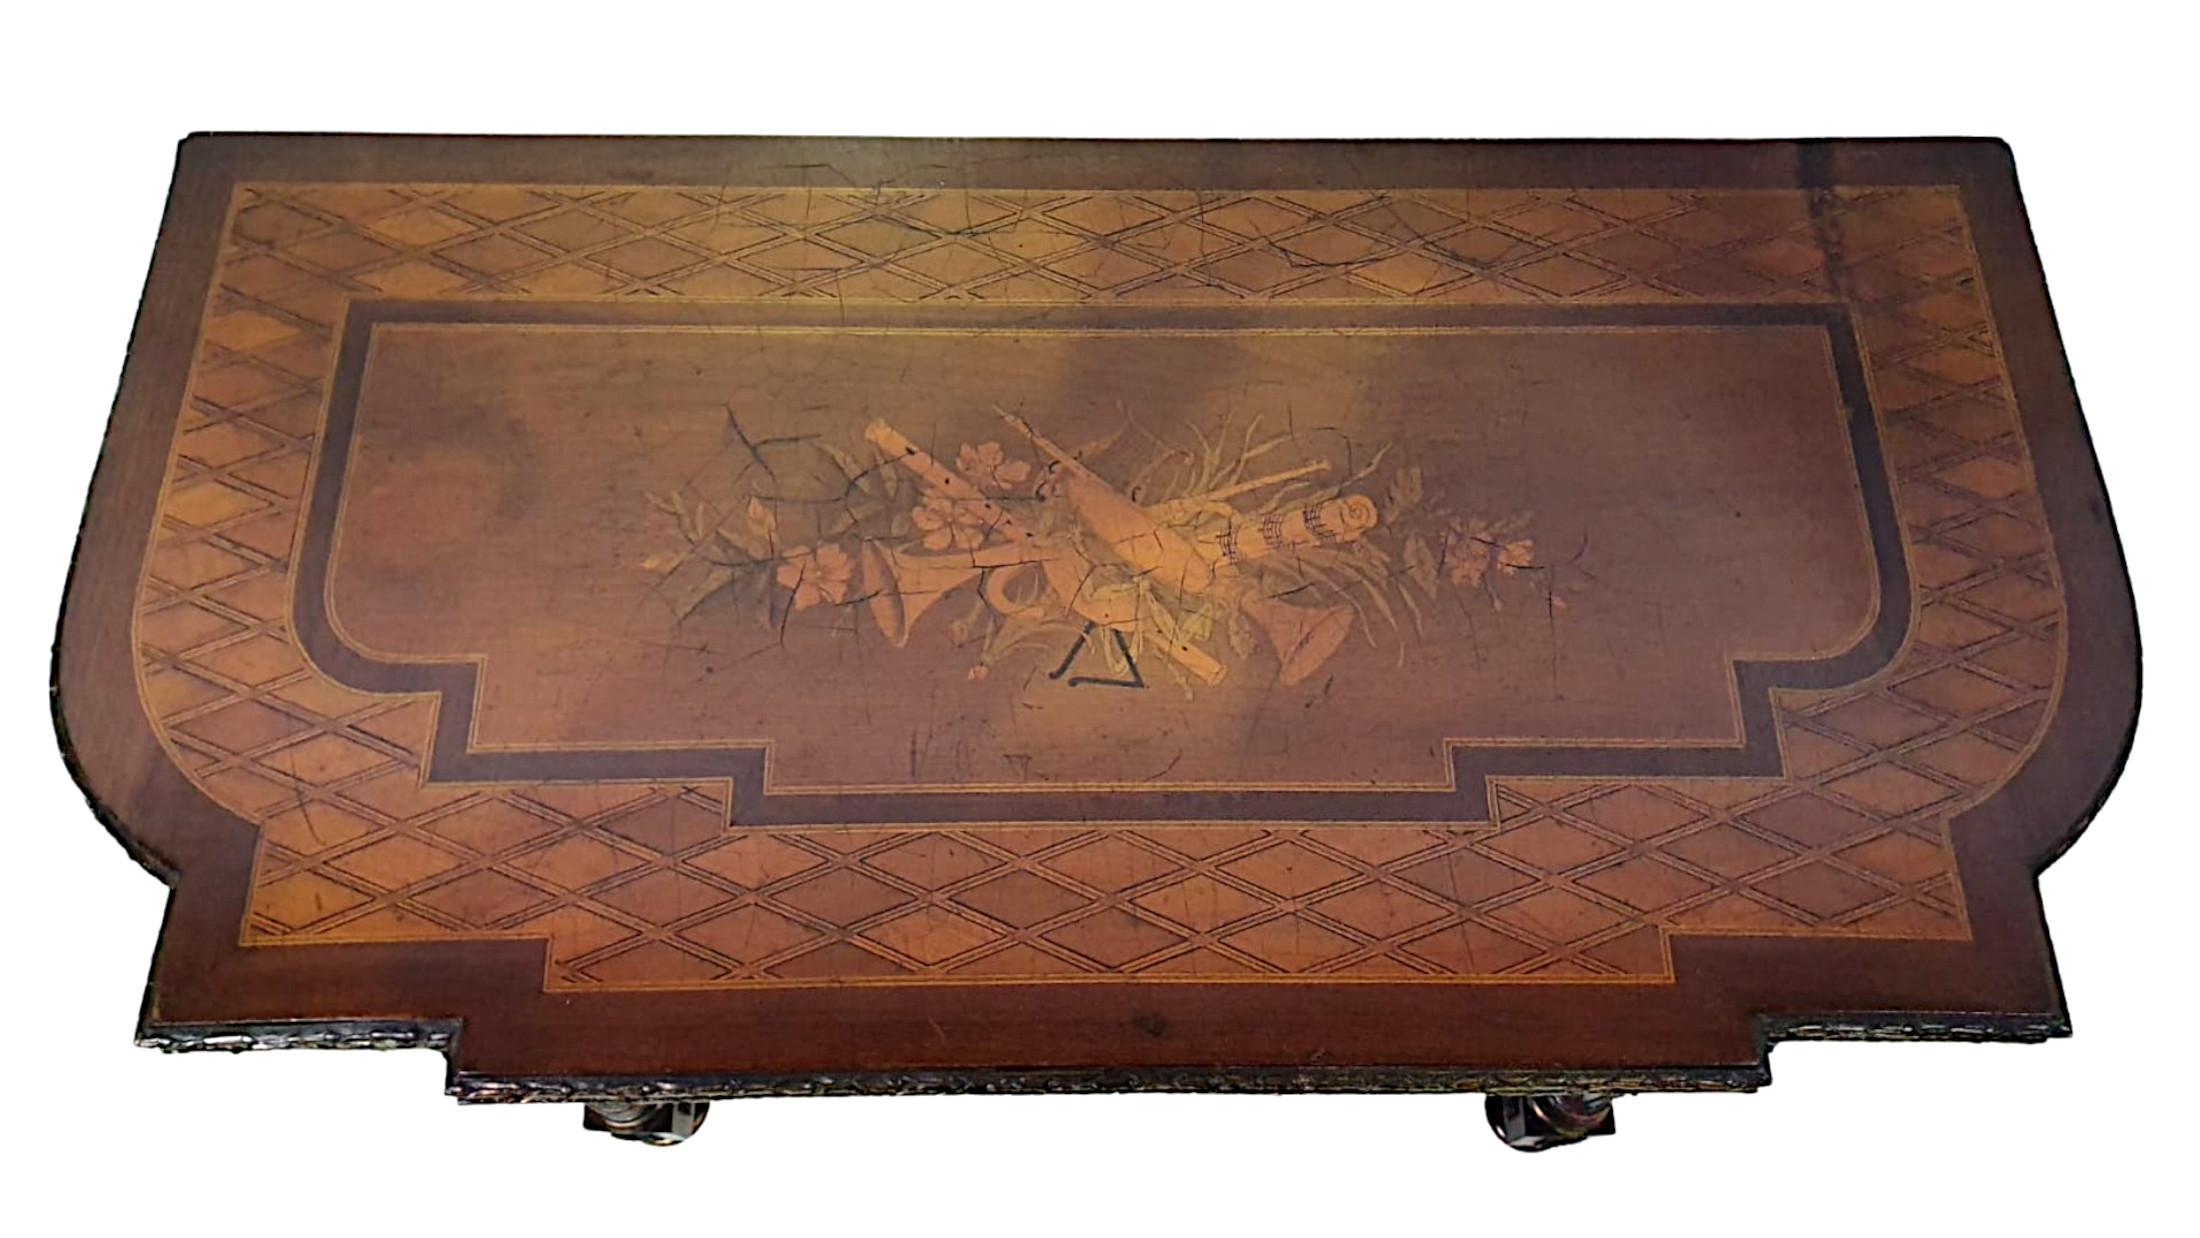 Ein seltenes Museum Qualität 19. Jahrhundert Intarsien drehen über Blatt Kartentisch mit Ormolu mounts thoughout. Die geformte und geformte Oberseite der rechteckigen Form mit komplizierten Intarsien zentriert mit einer Kartusche, die